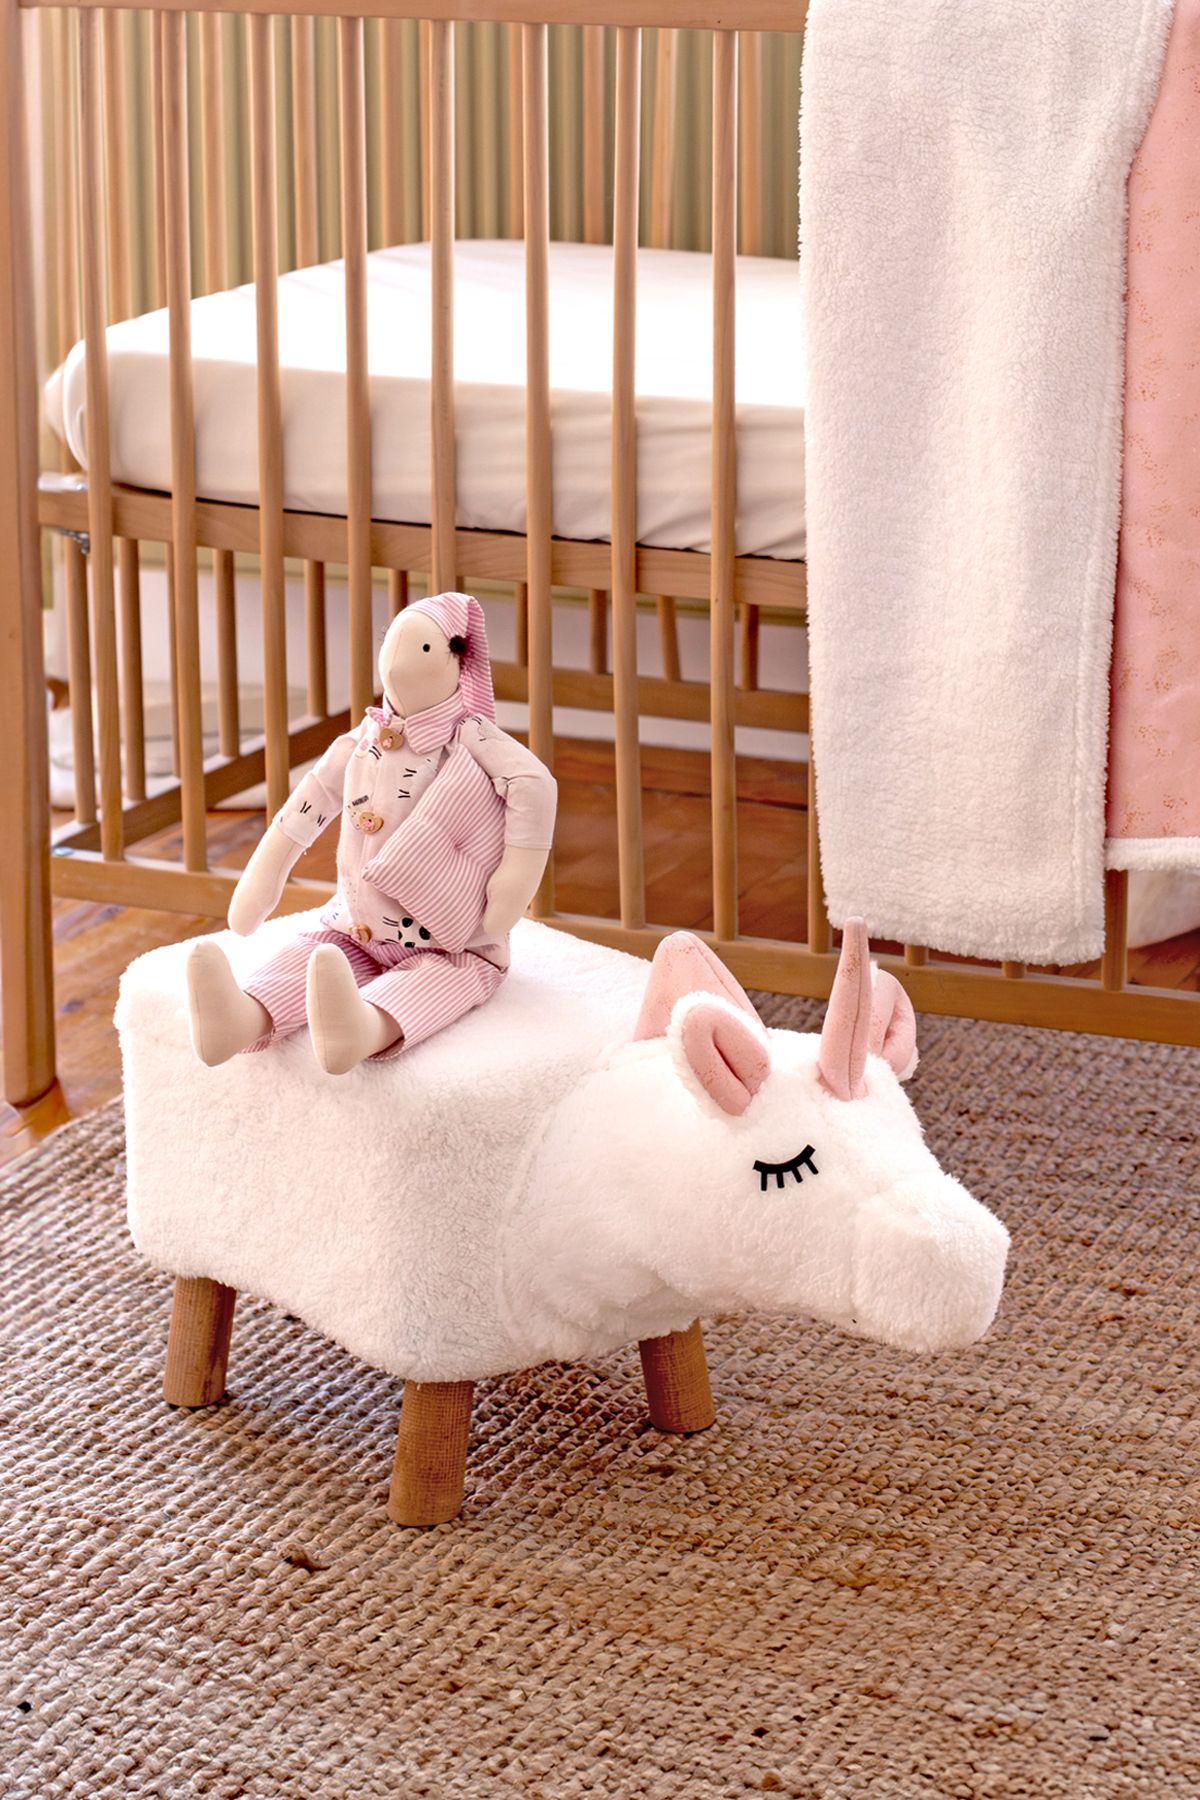 HAMUR Yıkanabilir Kılıflı Tabure Bebek Çocuk Oyun Koltuğu Sandalye Ahşap Ayaklı Puf Fluffy Zoo Unicorn